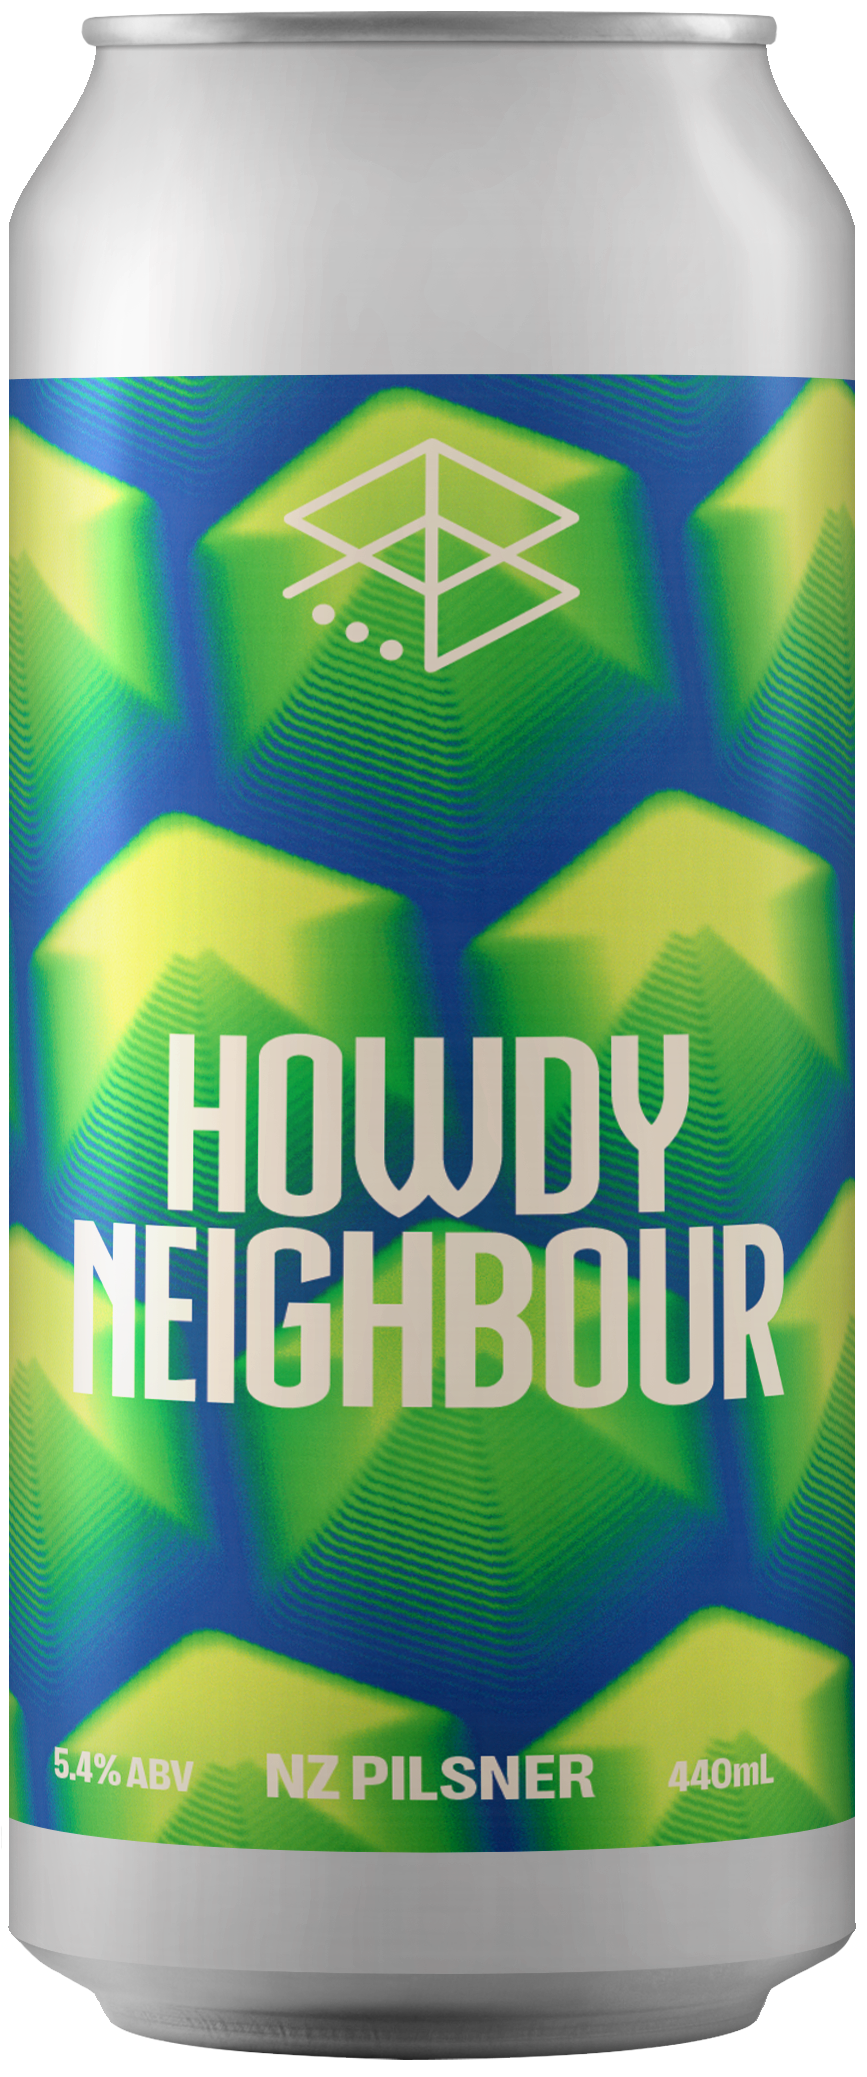 Howdy Neighbour - NZ Pilsner